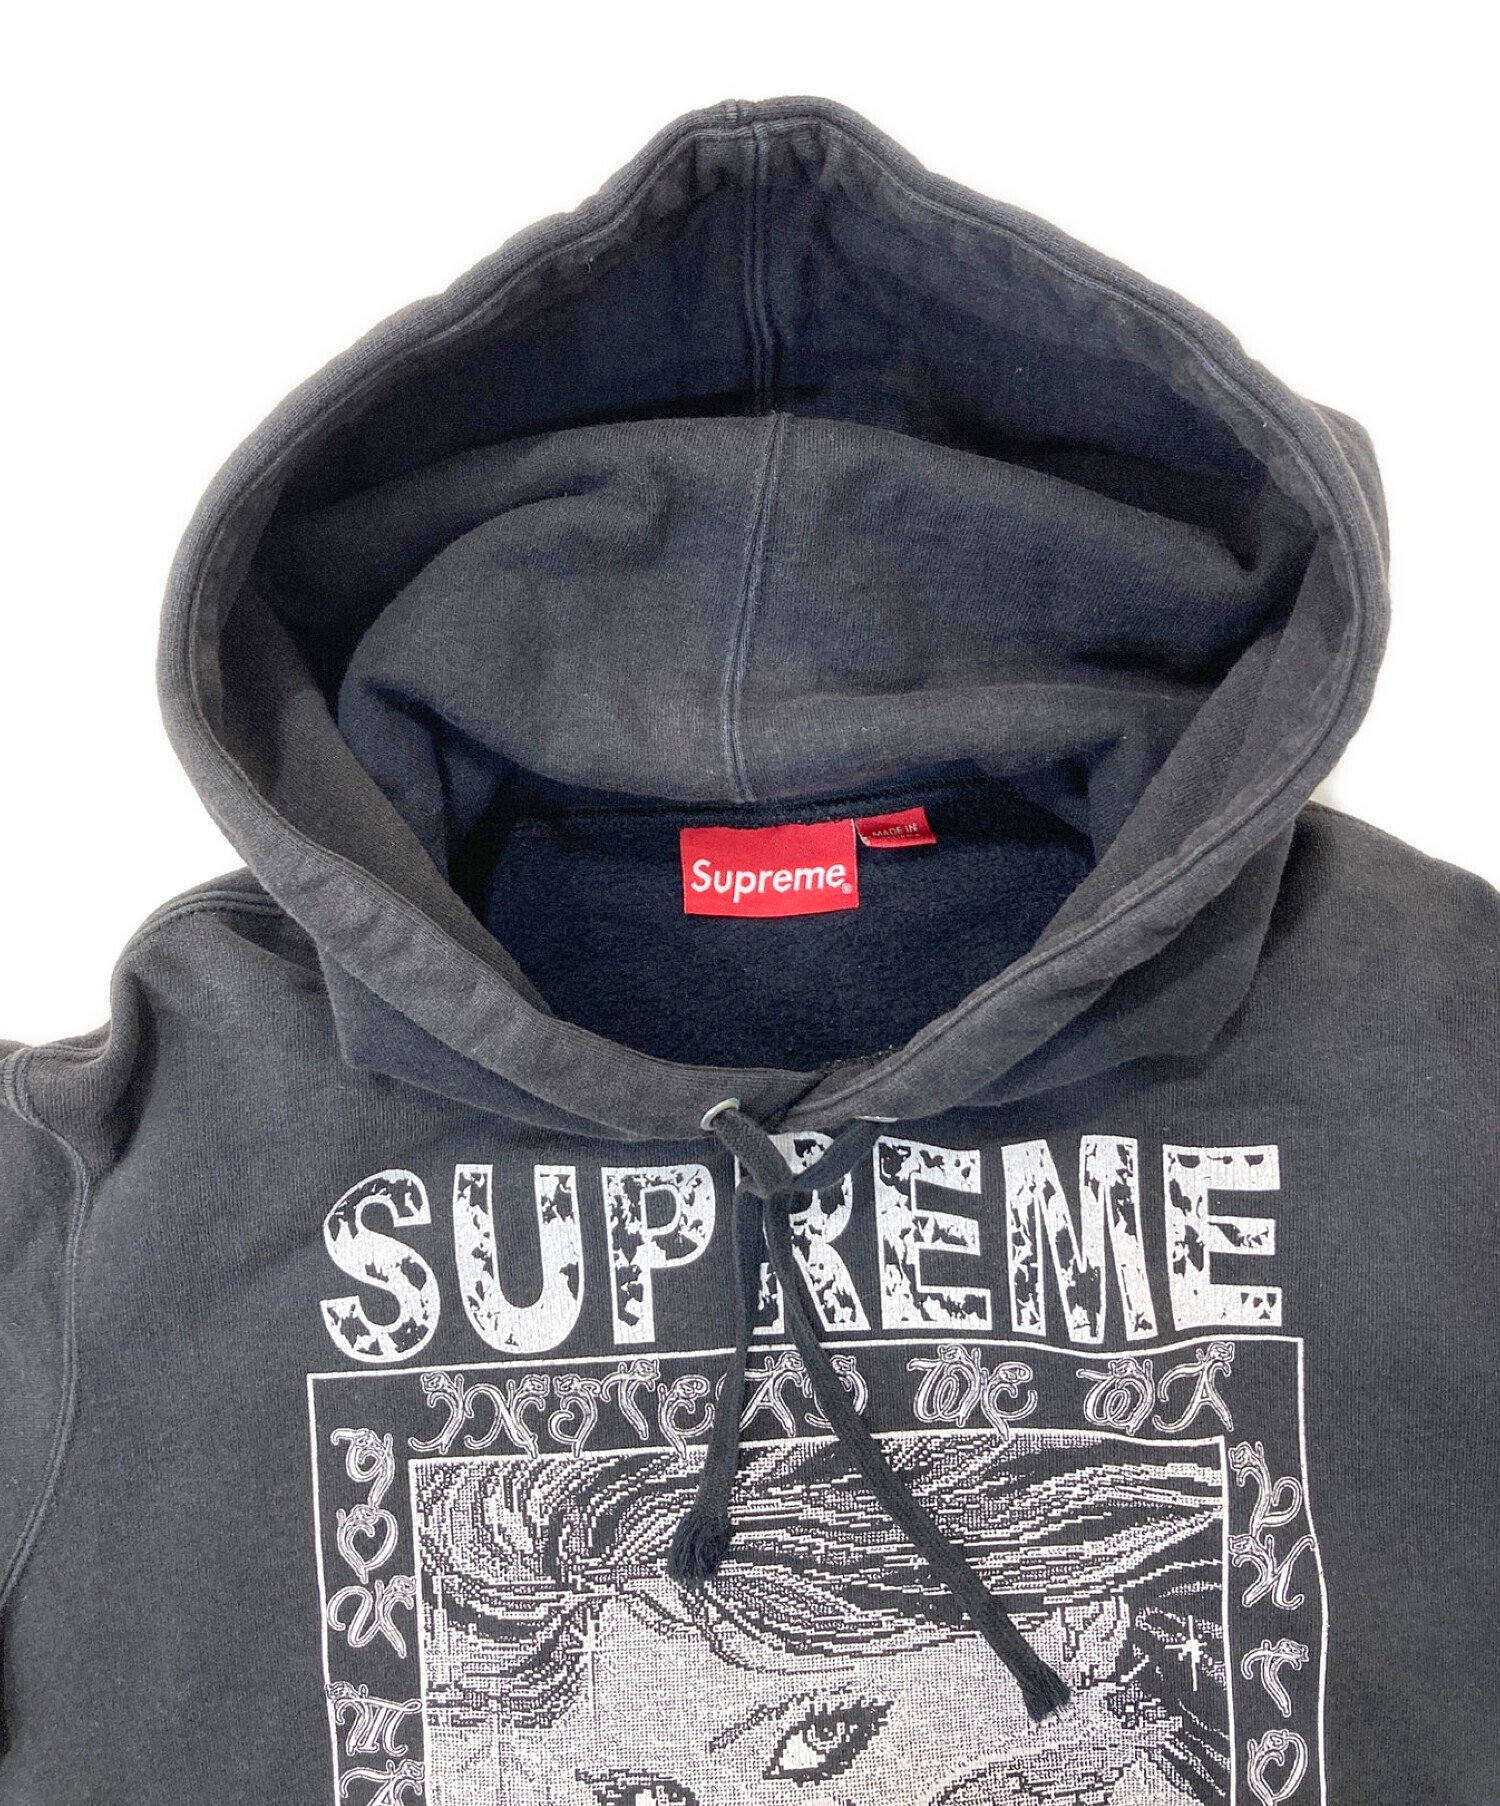 Supreme (シュプリーム) Doves Hooded Sweatshirt ブラック サイズ:S